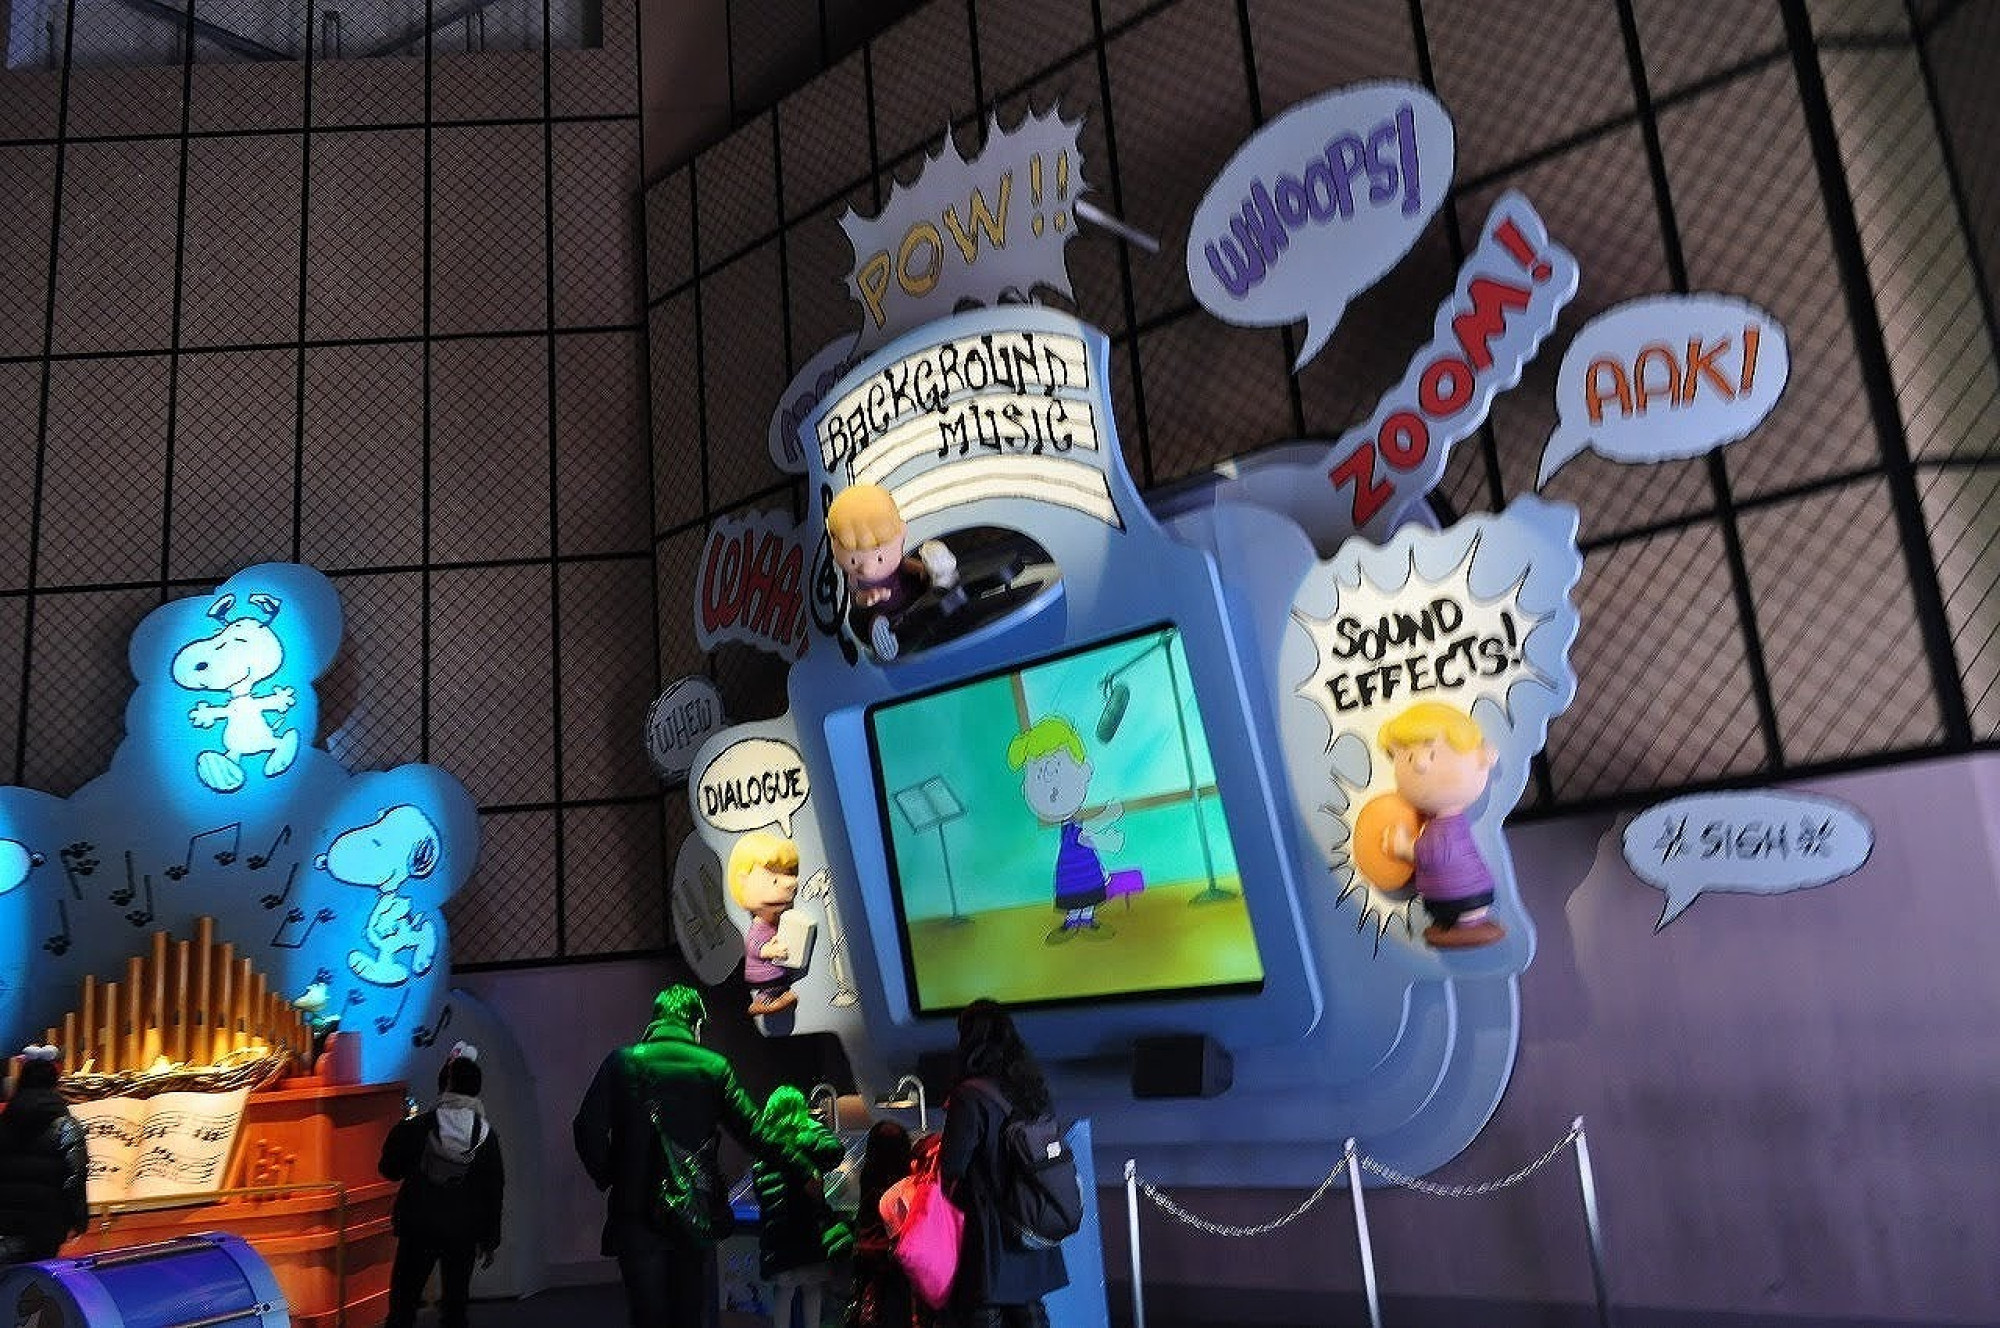 スヌーピースタジオ内のスヌーピーキャラクターのプレイコーナー キャステル Castel ディズニー情報